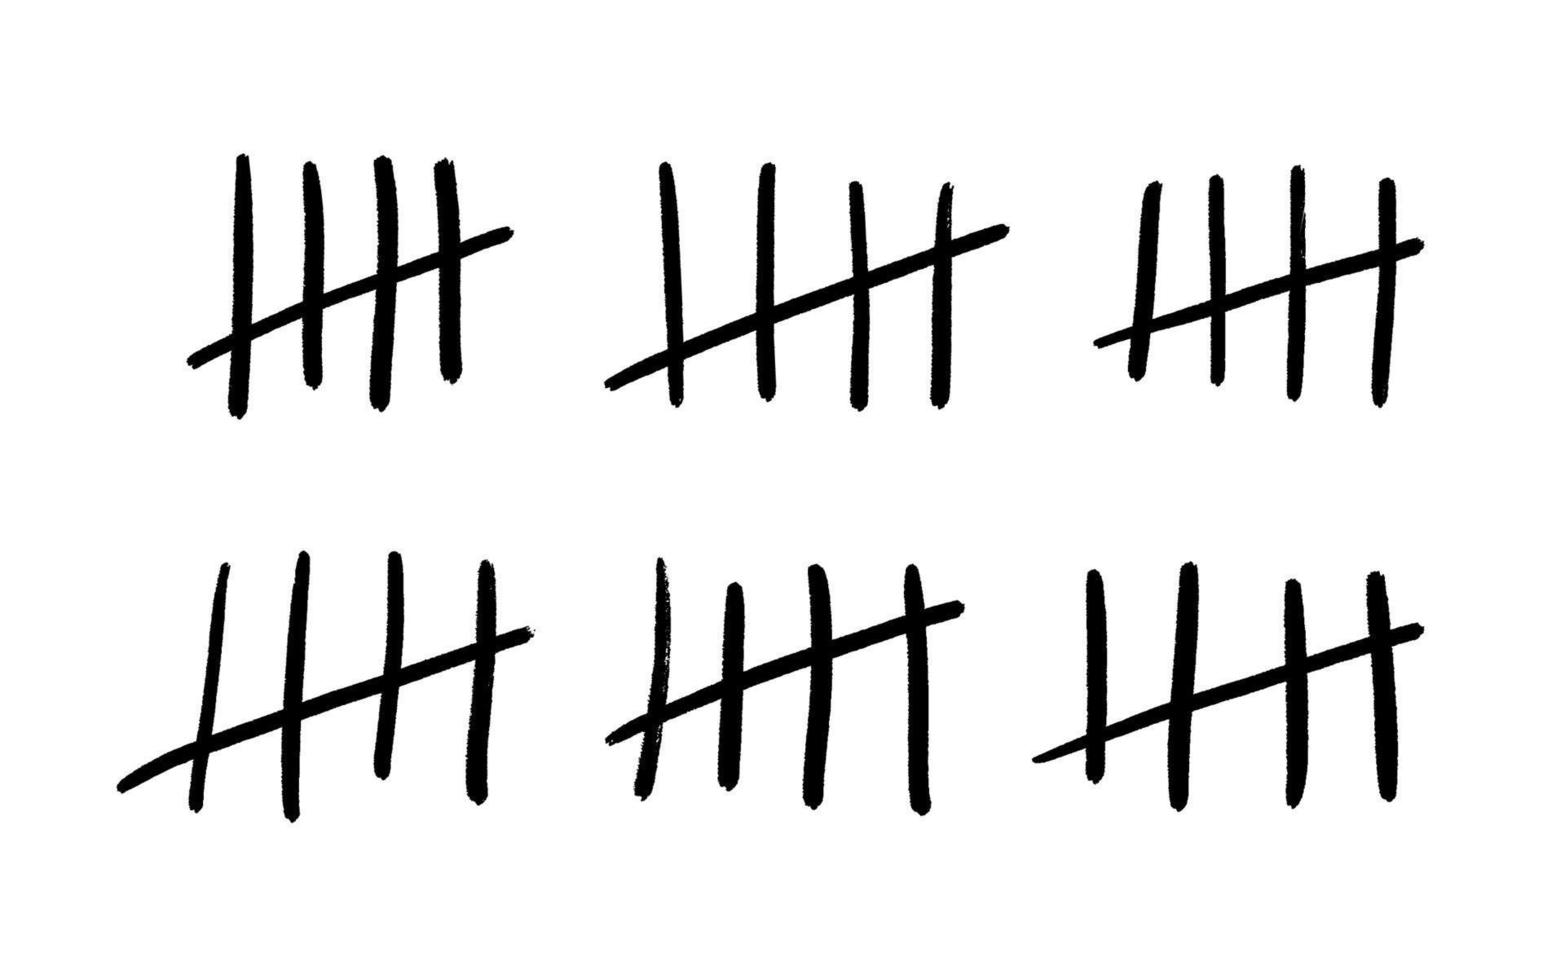 contando marcas ou marcas de prisão isoladas. quatro varas riscadas pela quinta vara. ilustração em vetor de marcas de números primitivos na parede ou no papel.